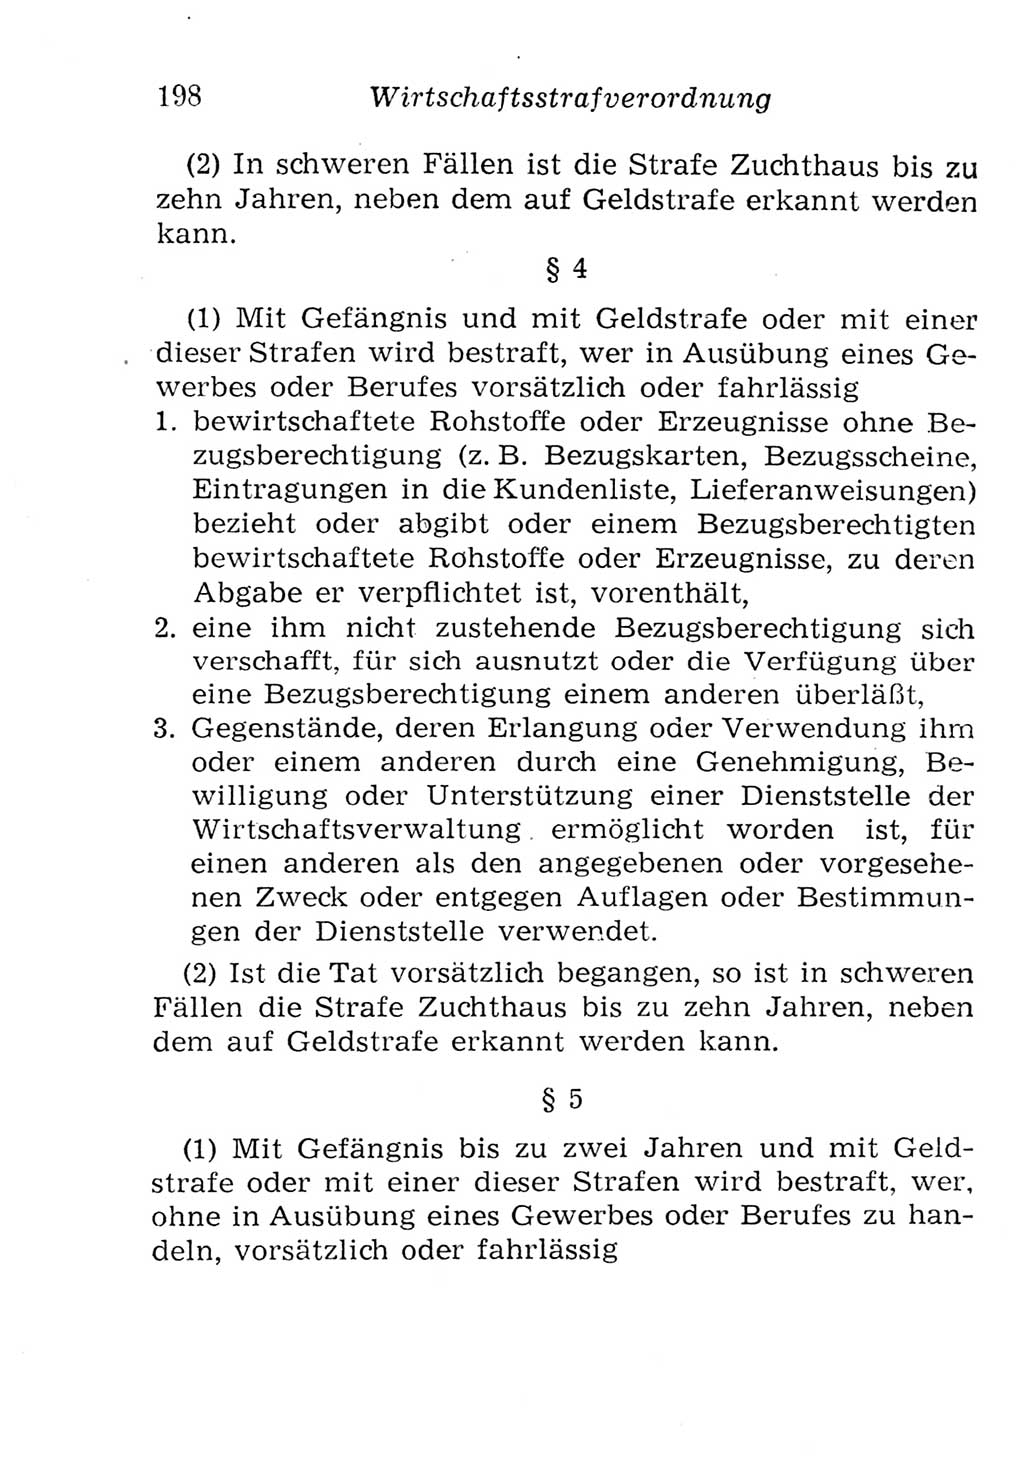 Strafgesetzbuch (StGB) und andere Strafgesetze [Deutsche Demokratische Republik (DDR)] 1957, Seite 198 (StGB Strafges. DDR 1957, S. 198)